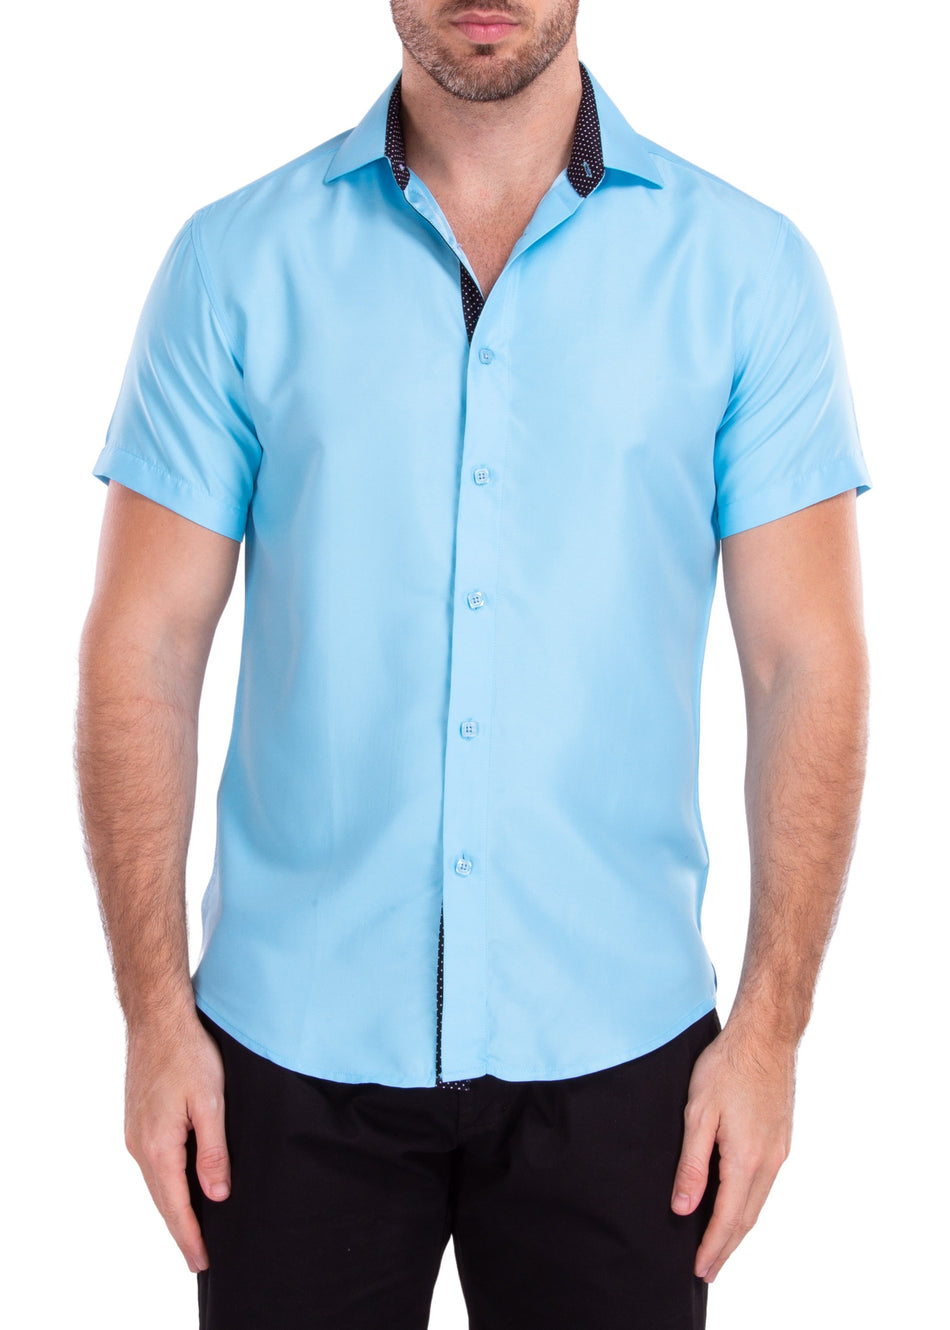 212049 - Turquoise Short Sleeve